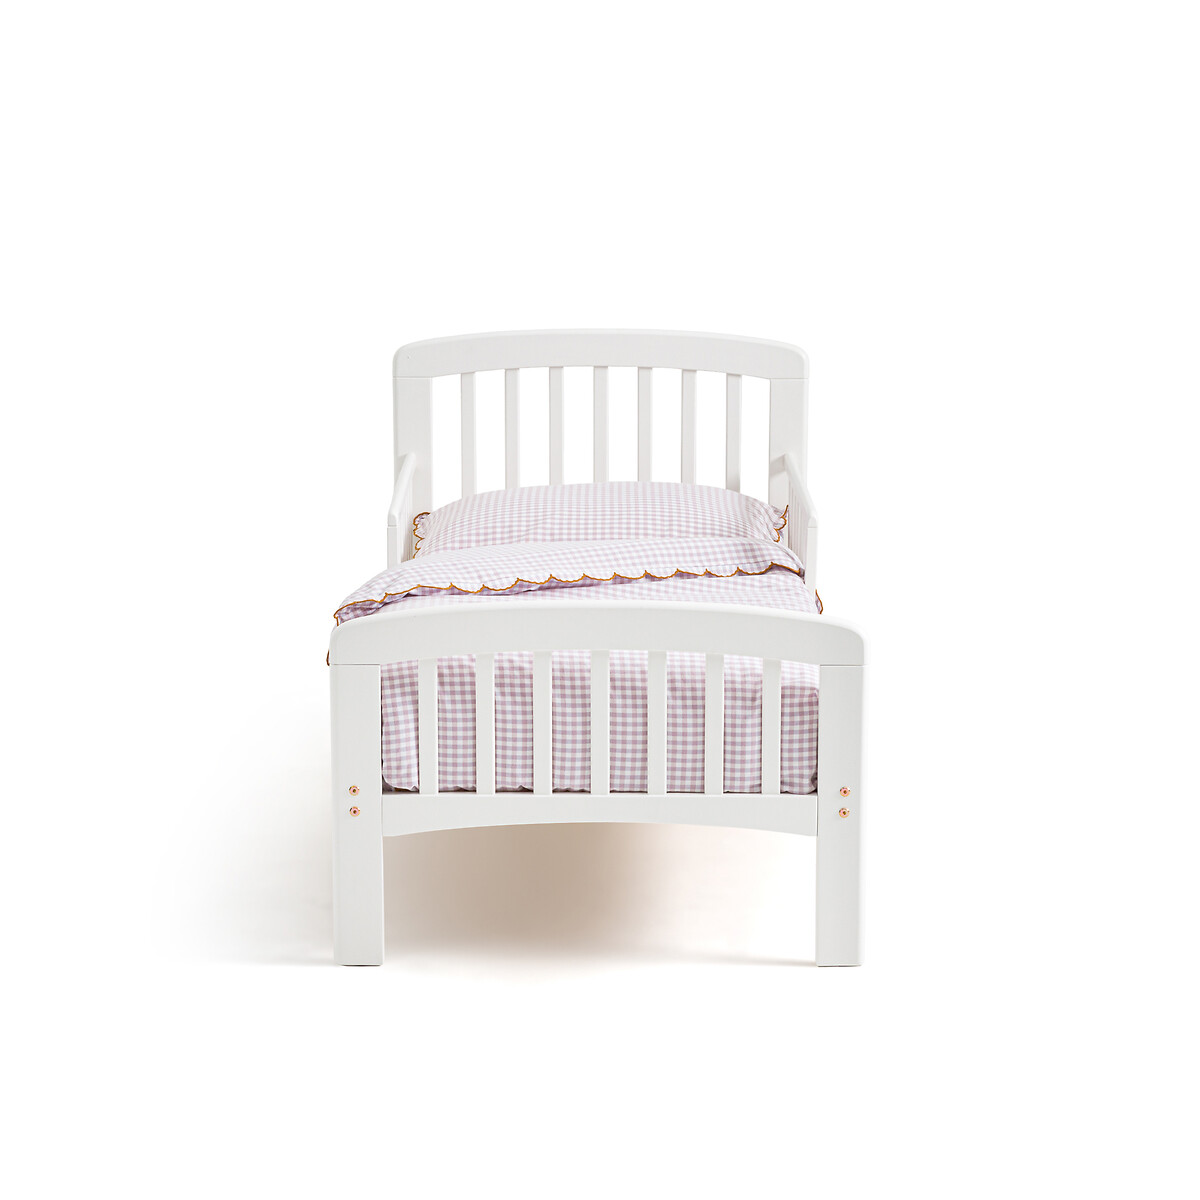 Кровать детская из березы Soti  70 x 140 см белый LaRedoute, размер 70 x 140 см - фото 2